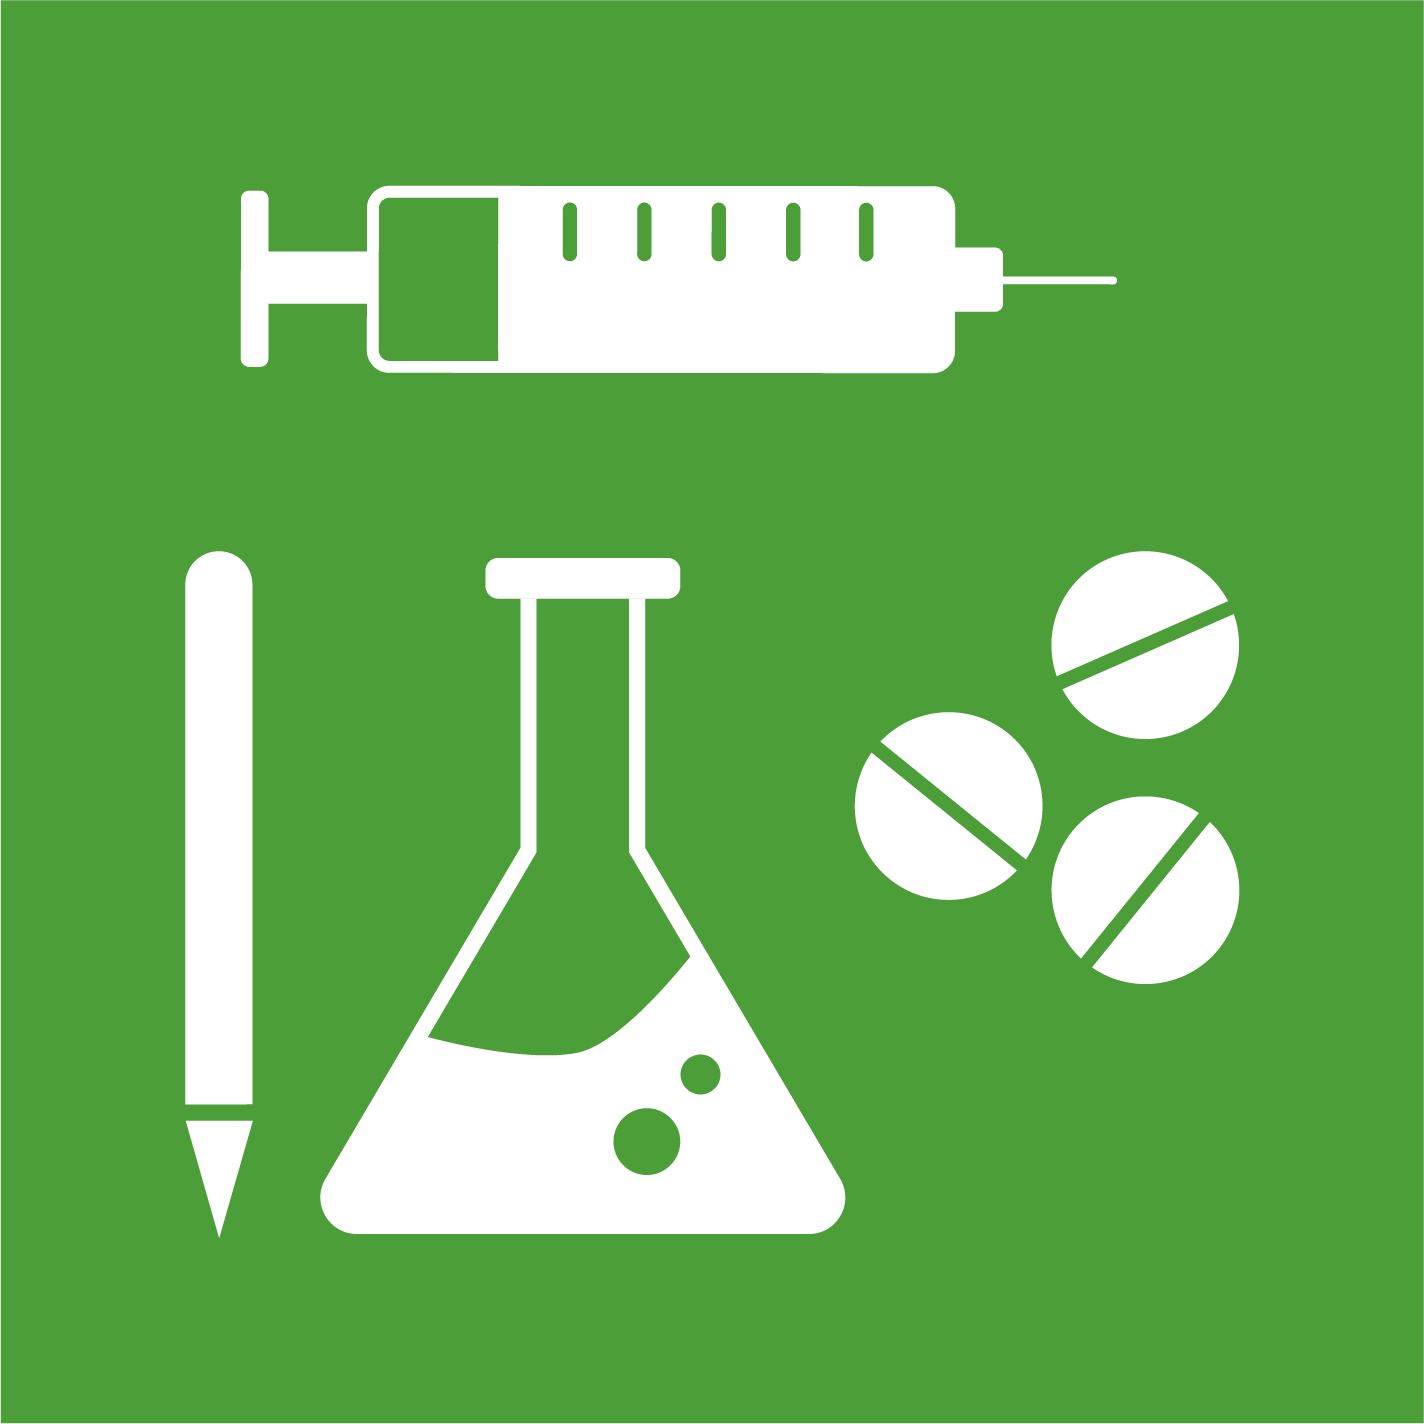 3.b - Apoyar la investigación, el desarrollo y el acceso universal a vacunas y medicamentos asequibles